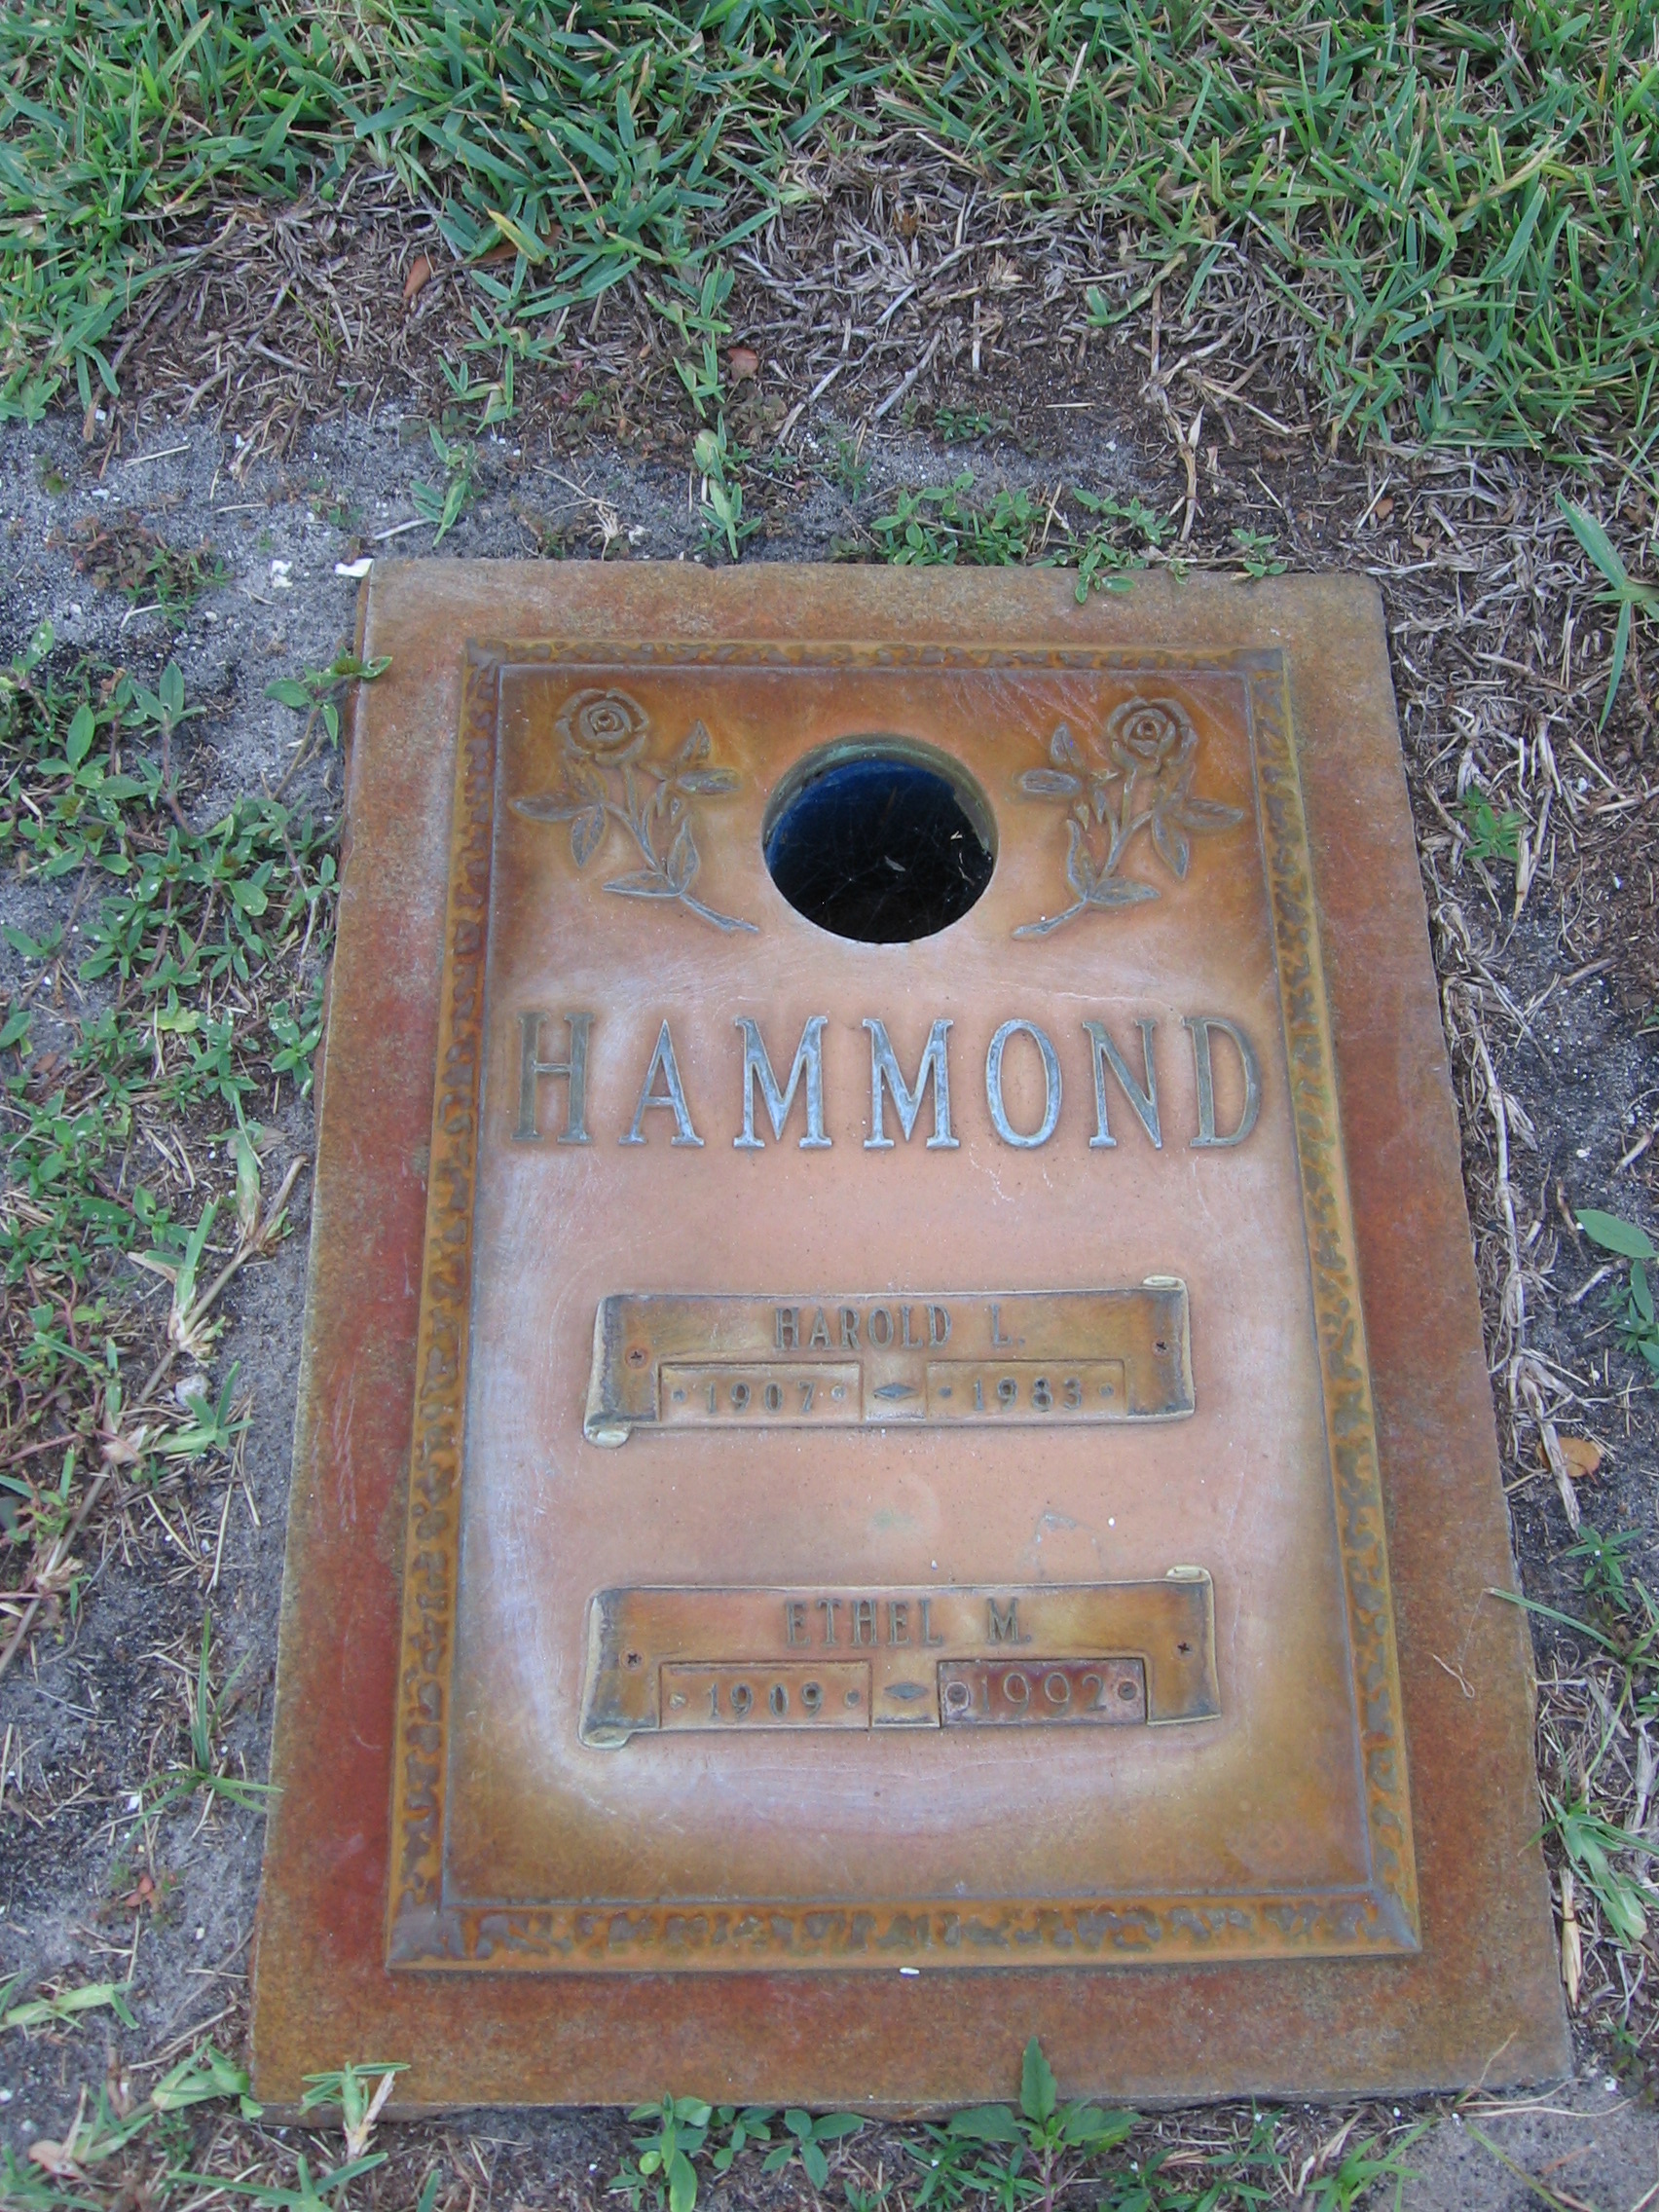 Harold L Hammond